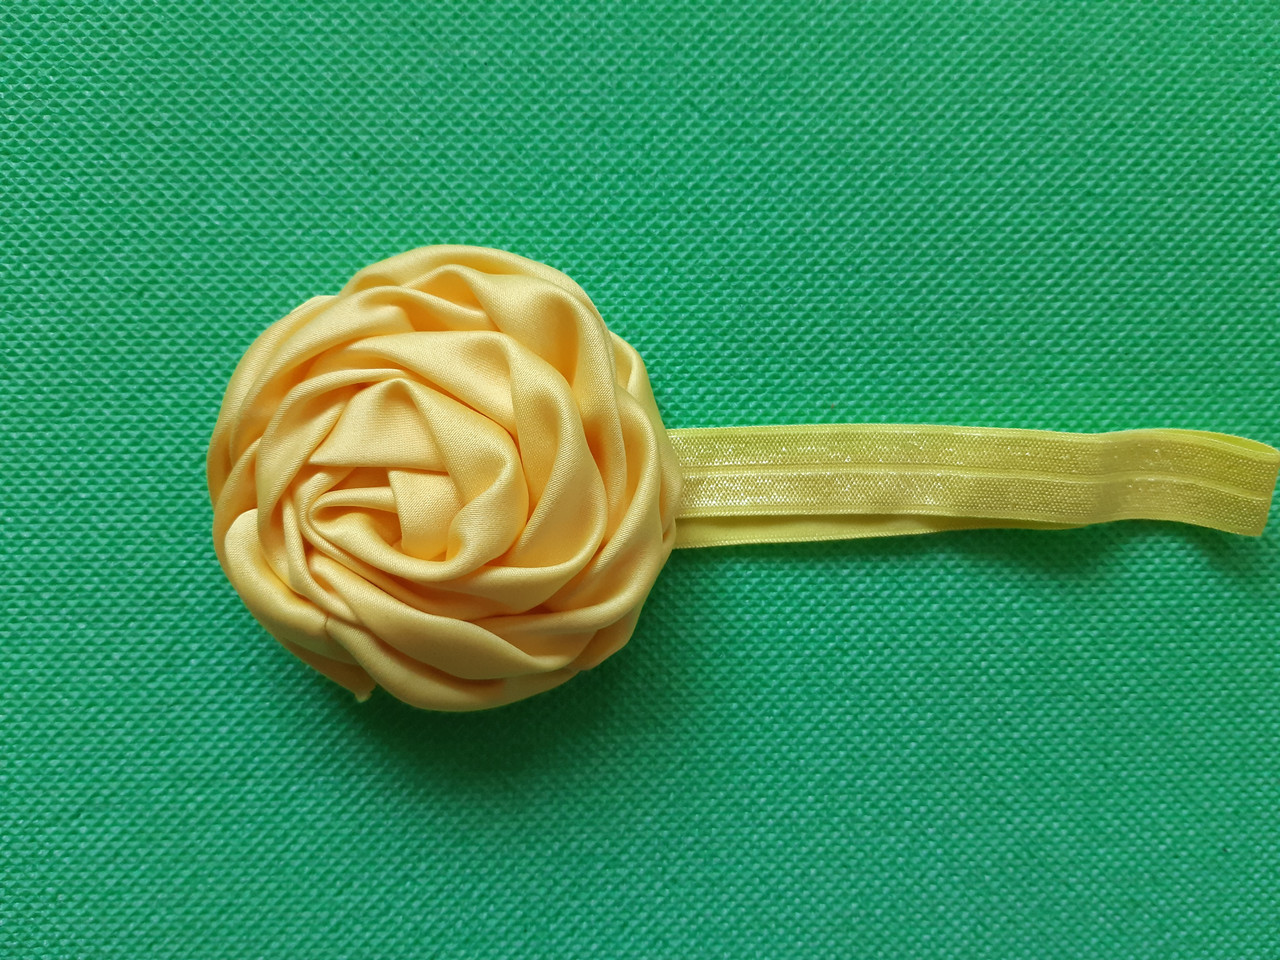 Пов'язка дитяча з трояндочкою жовта квітка 8см, окружність 36-52см